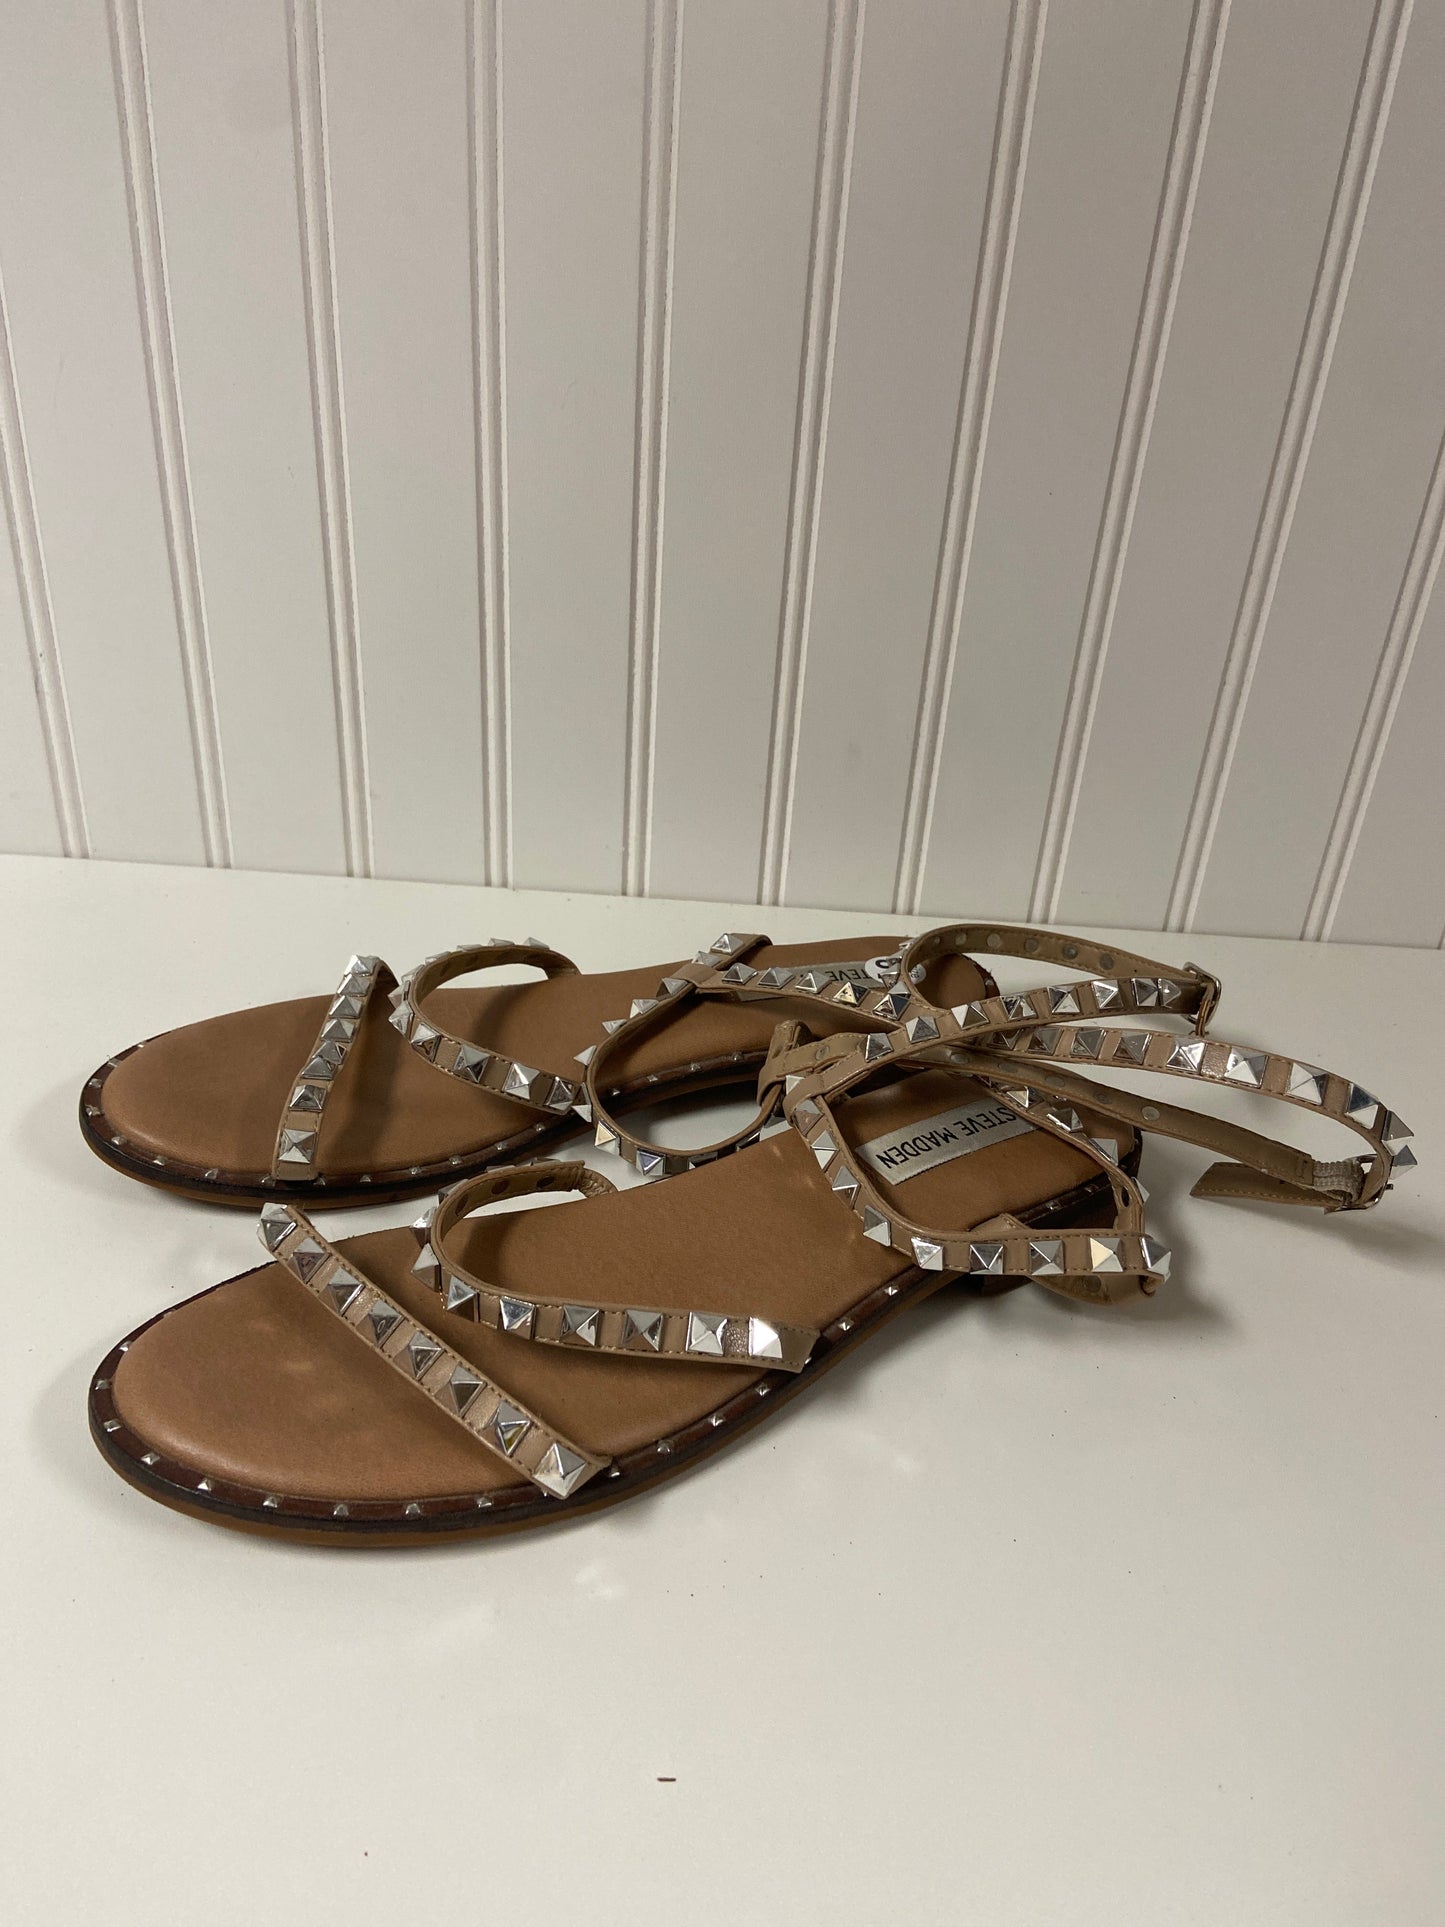 Tan Sandals Flats Steve Madden, Size 8.5